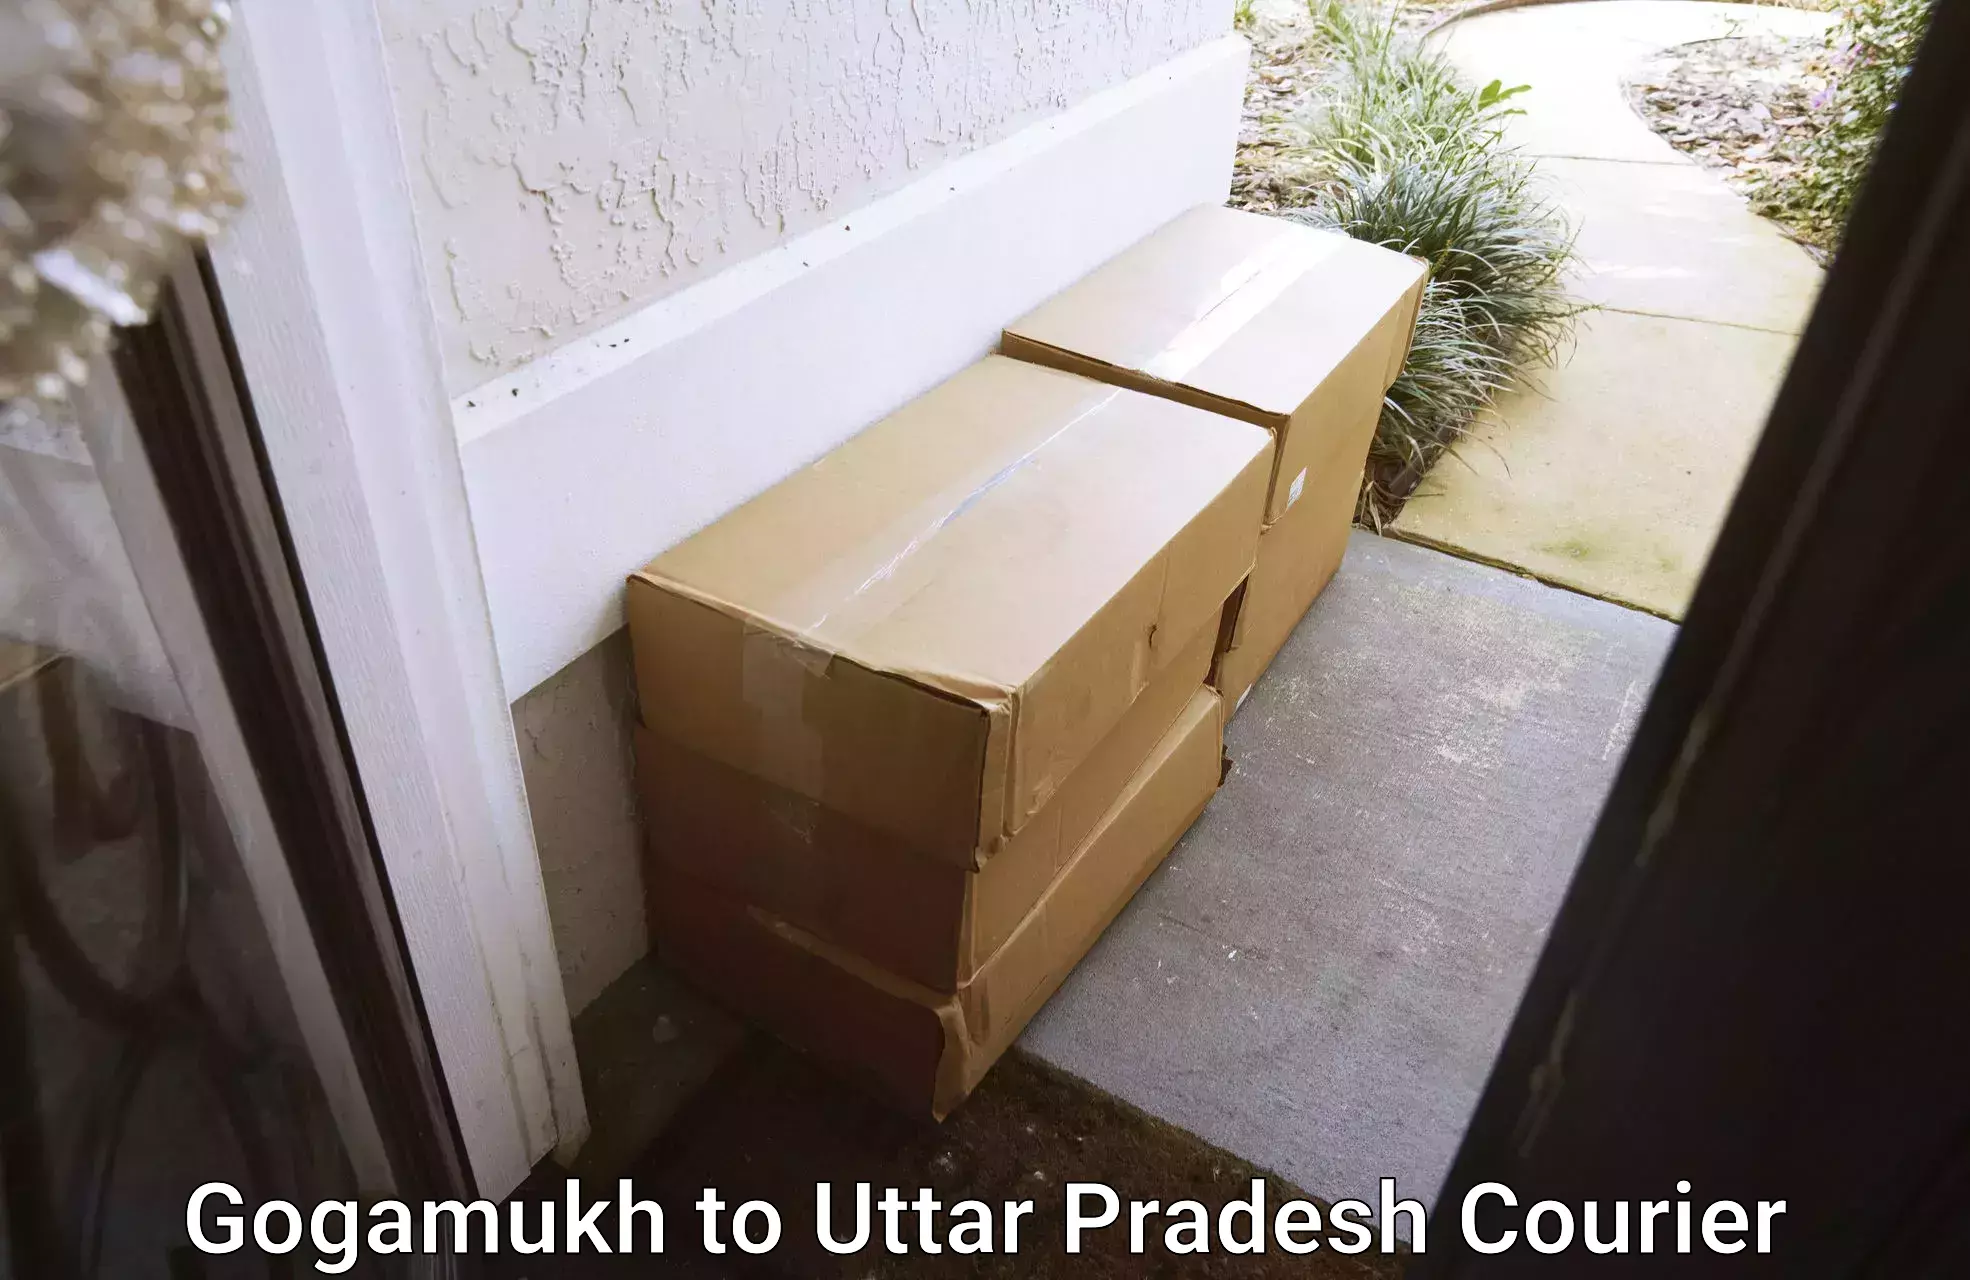 Sustainable delivery practices Gogamukh to Gorakhpur